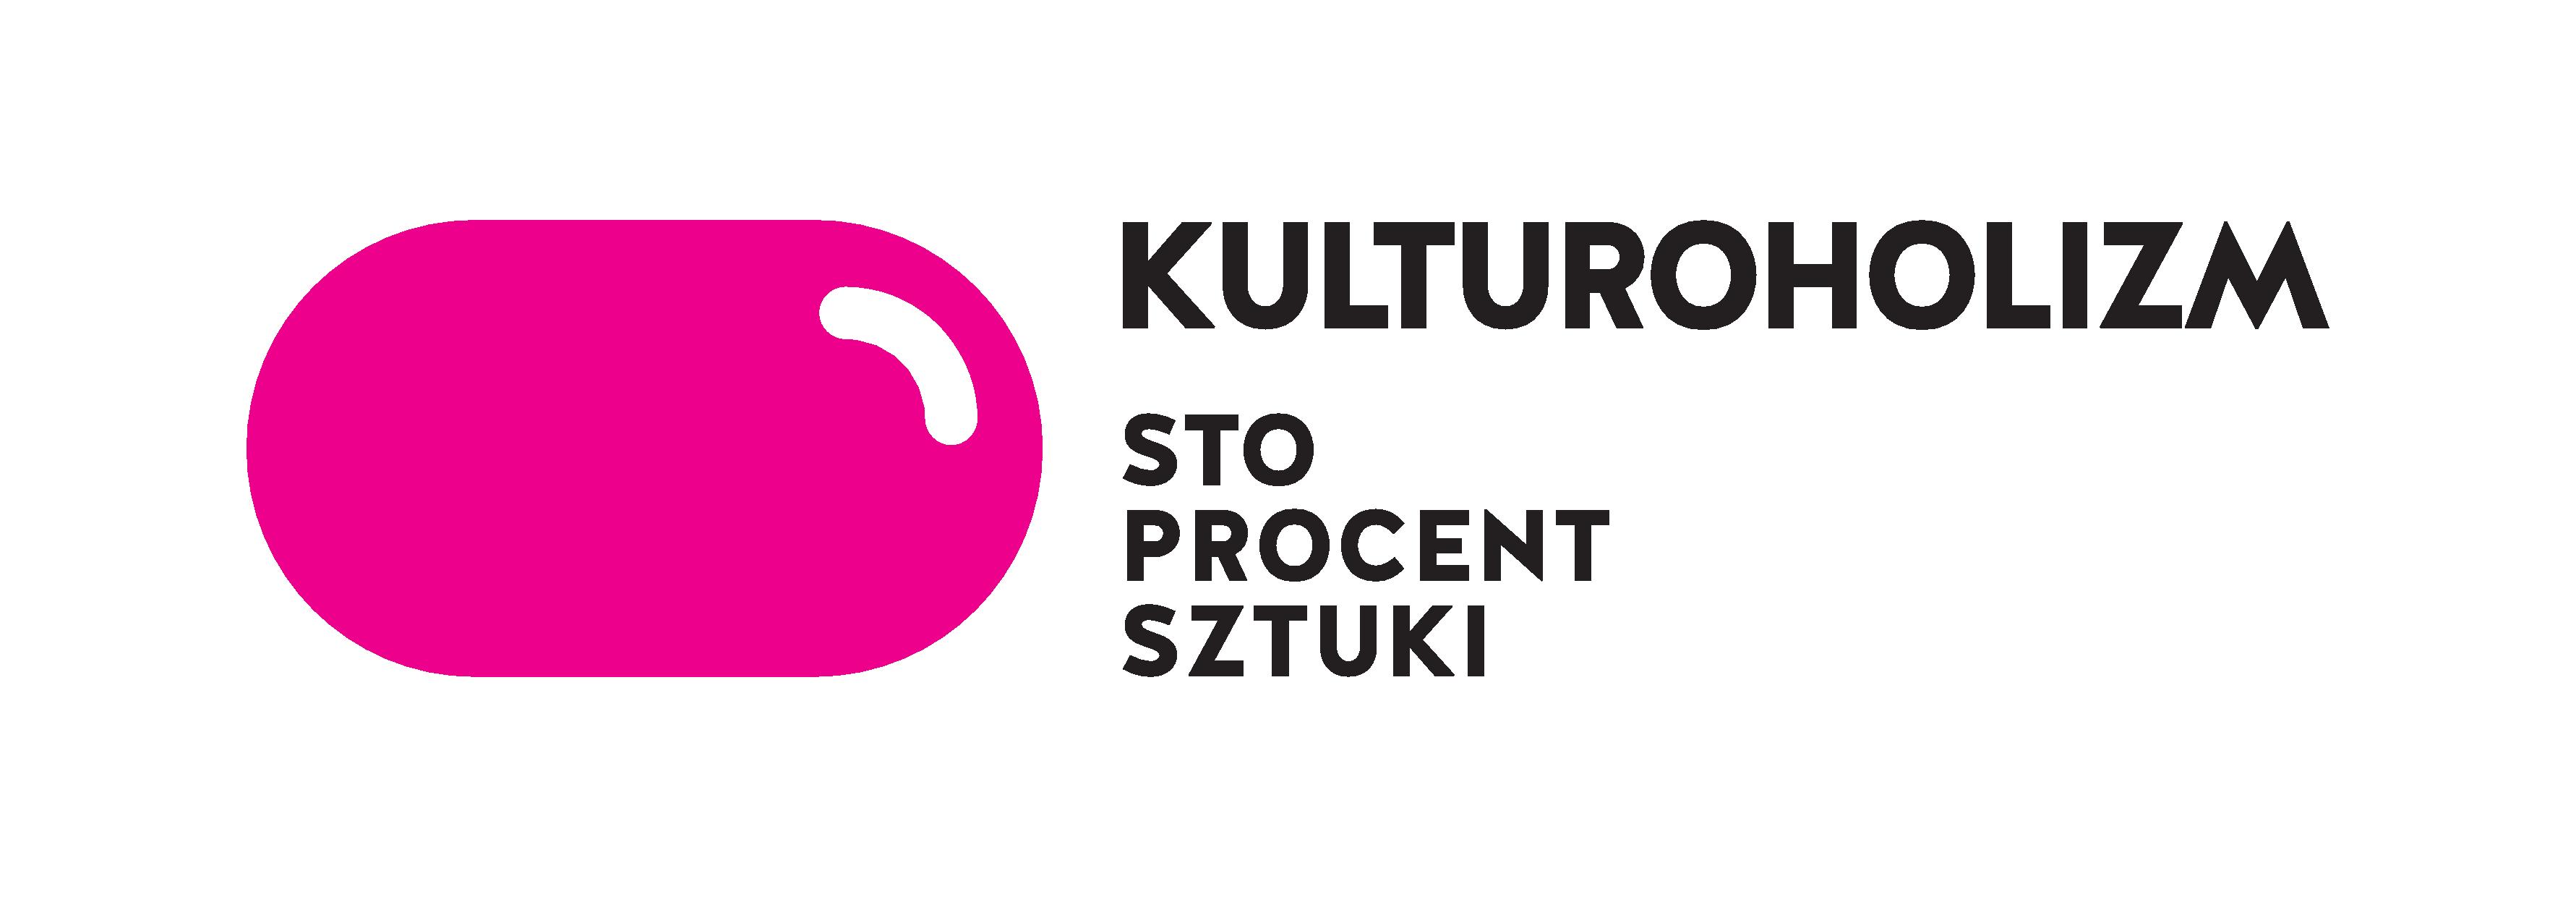 Kulturoholizm, logo (źródło: mat. prasowe)